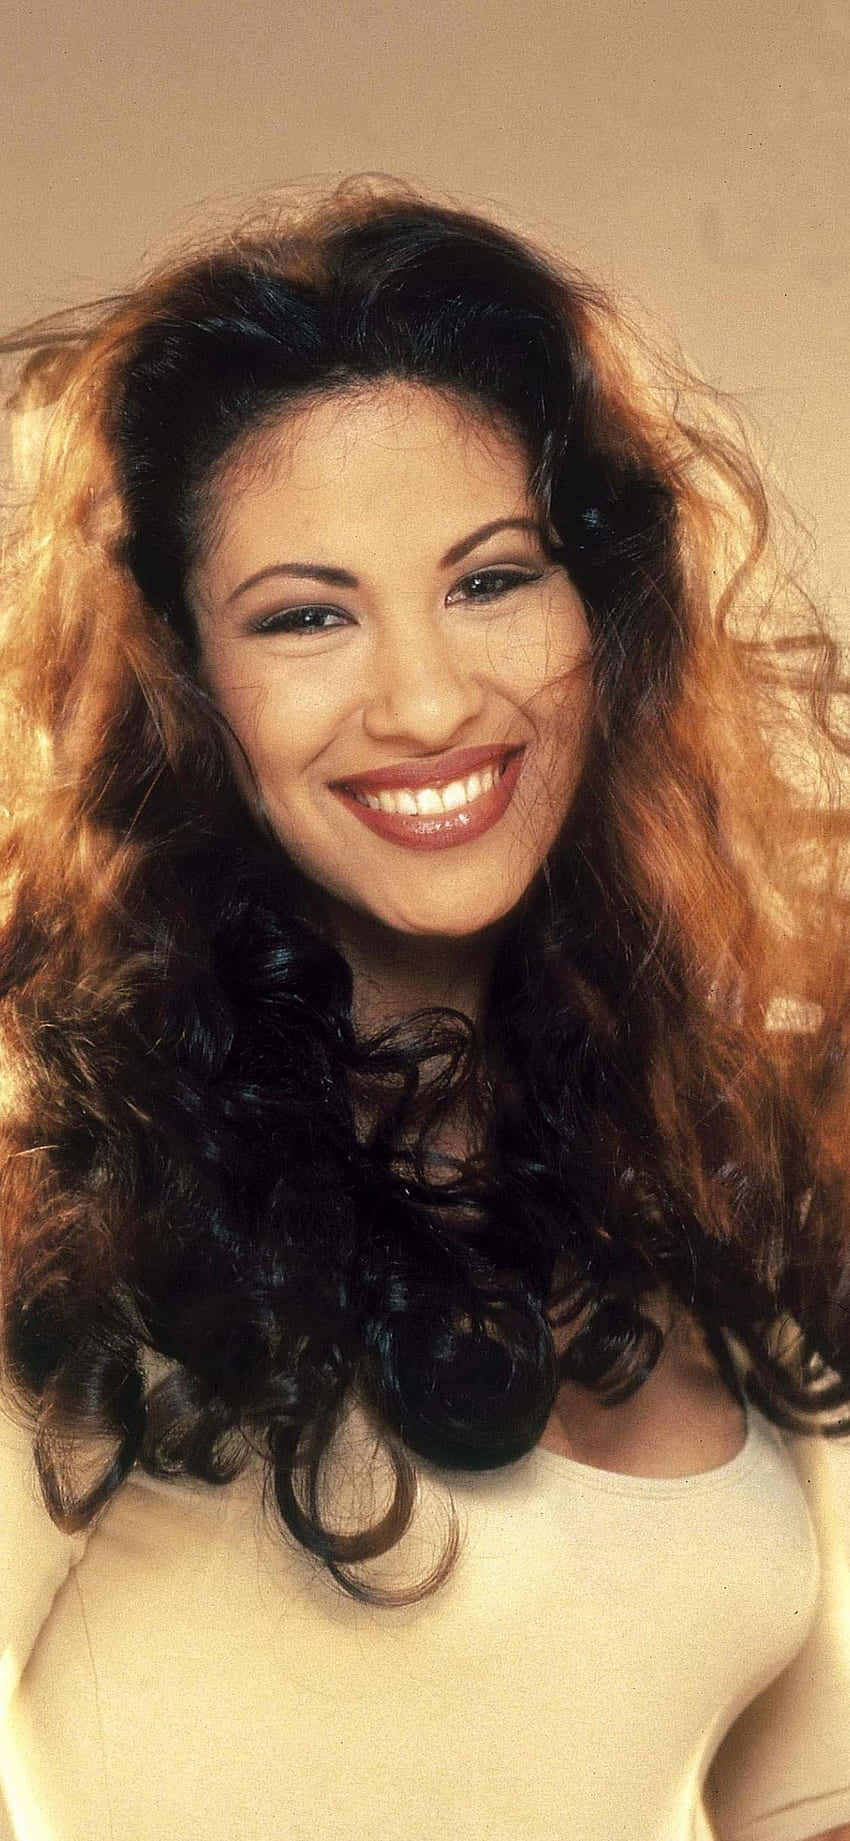 Holensie Sich Die Kraft Von Selena Quintanilla In Ihre Tasche. Wallpaper